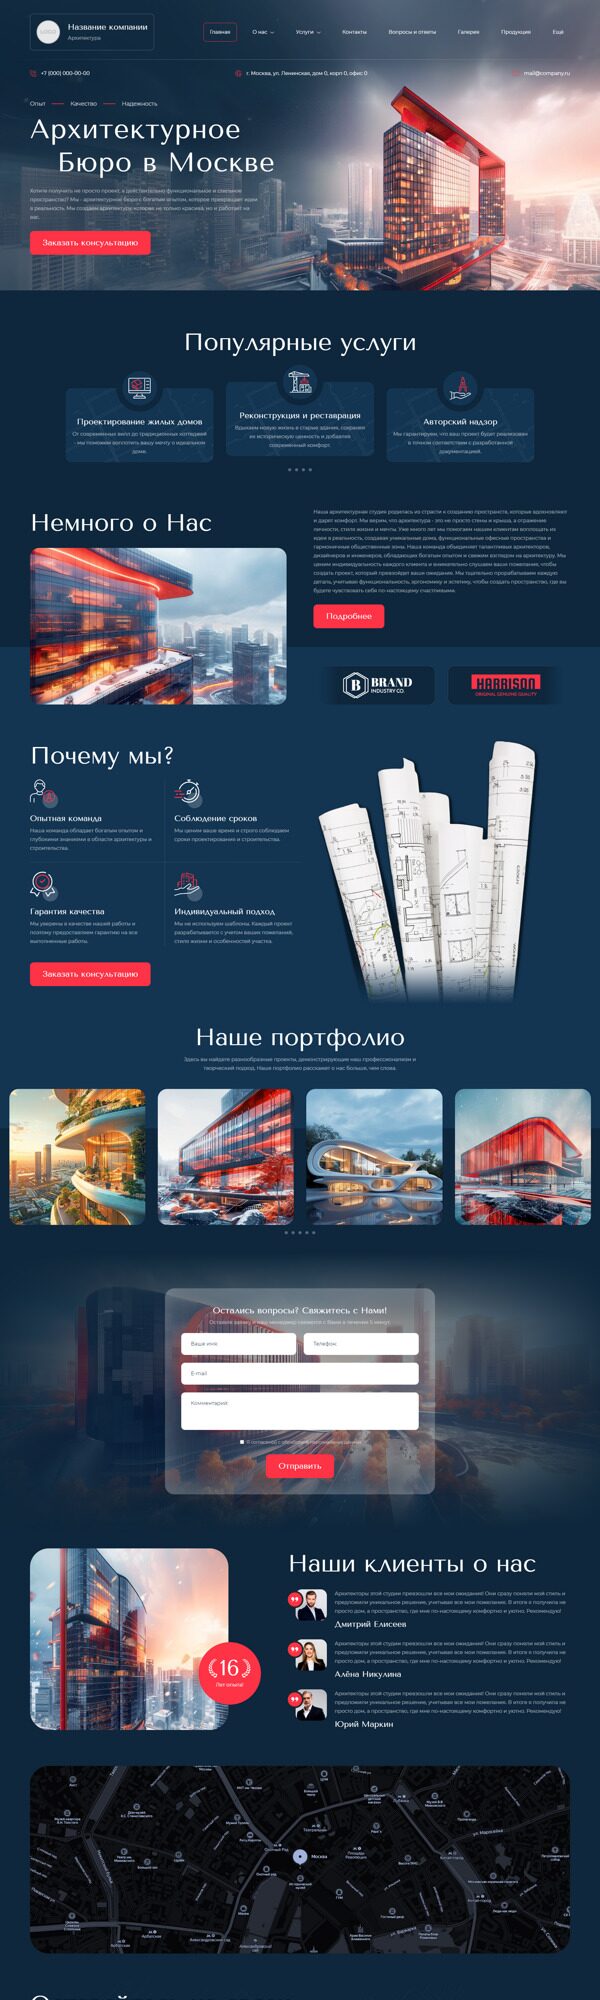 Готовый Сайт-Бизнес № 5970805 - Архитектура, дизайн, проектирование (Десктопная версия)